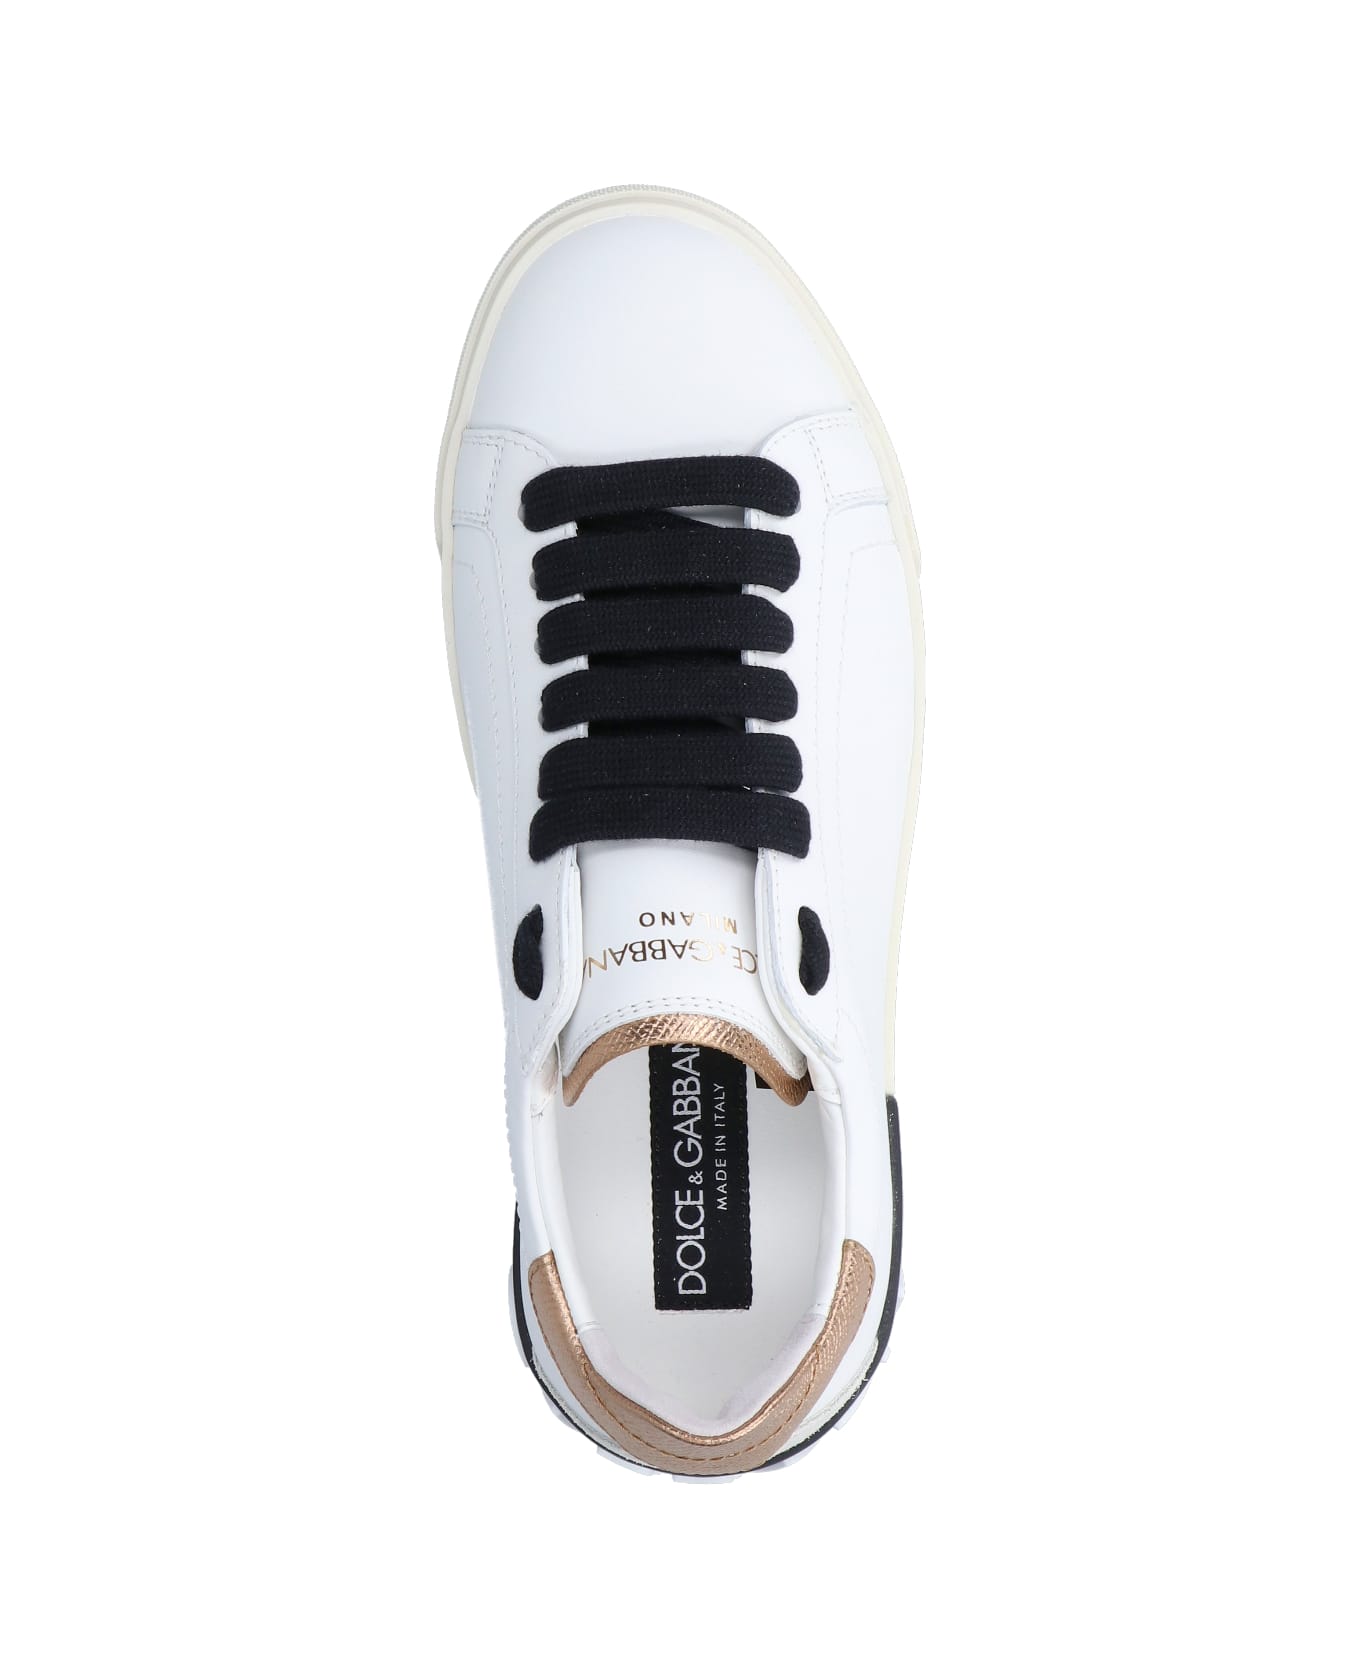 Dolce & Gabbana "portofino" Sneakers - White スニーカー